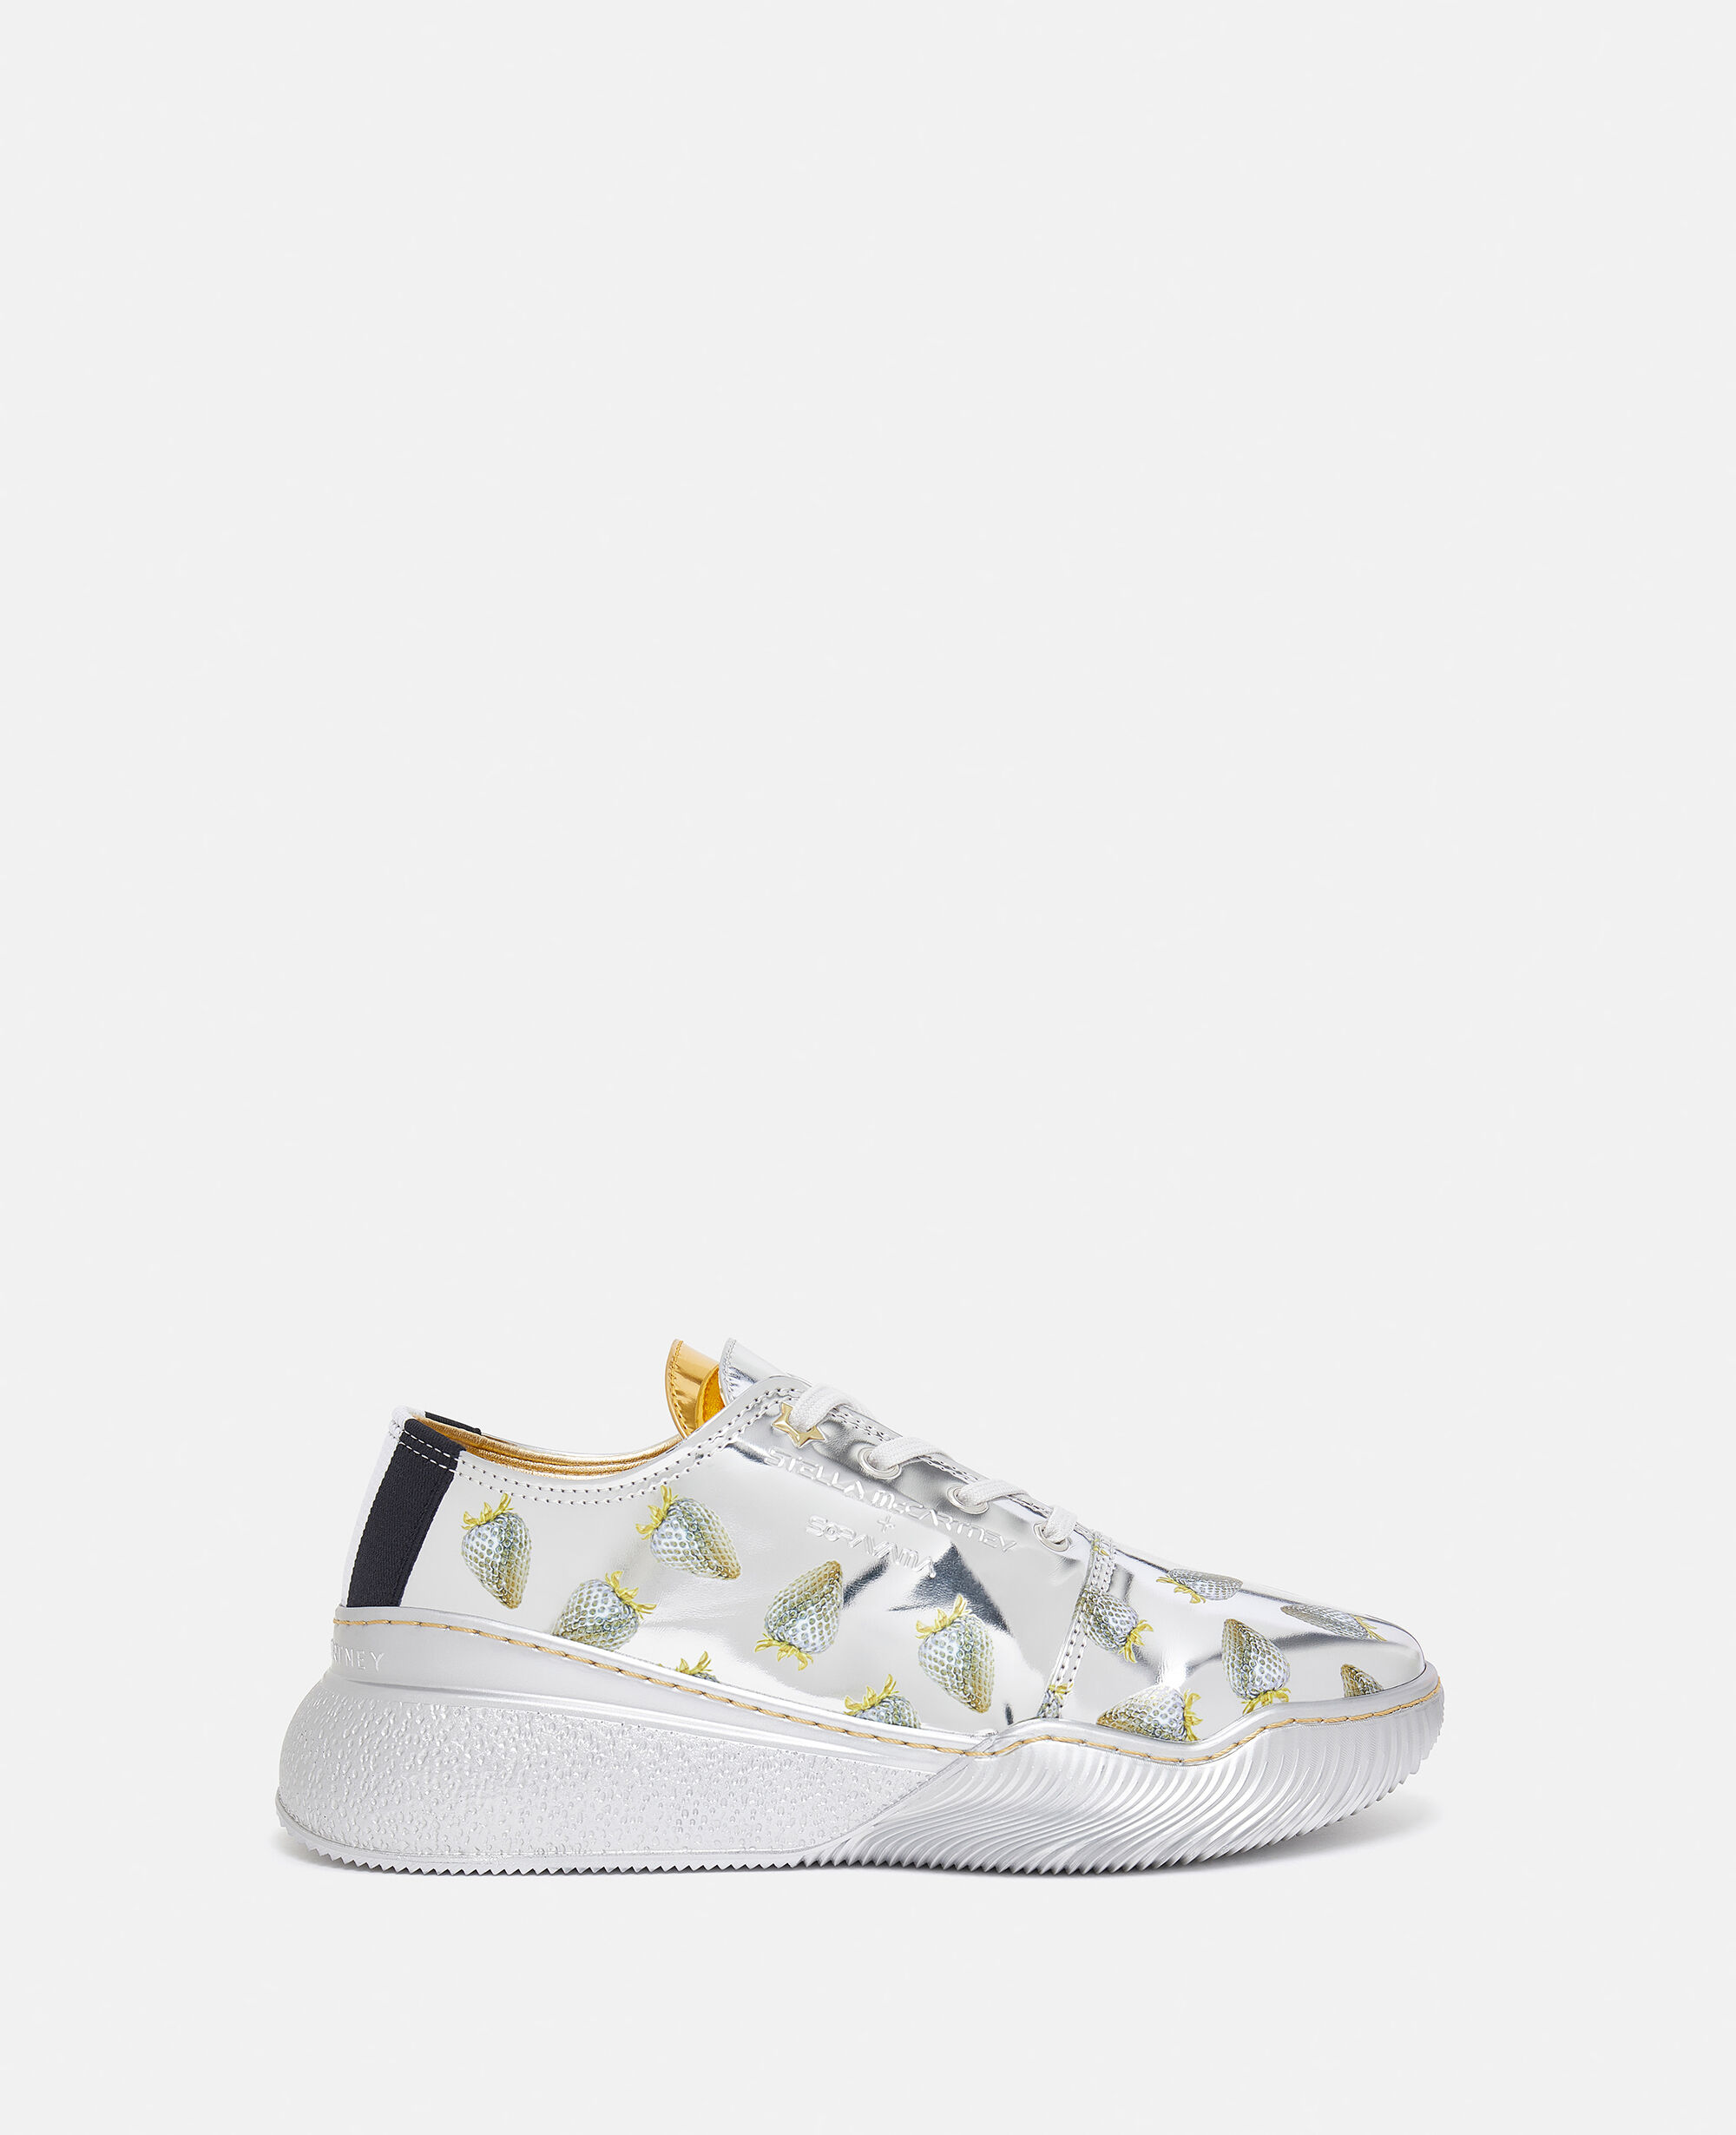 Stella McCartney x Adidas Ultraboost Sneakers in White Leopard - Meghan  Markle's Shoes - Meghan's Fashion